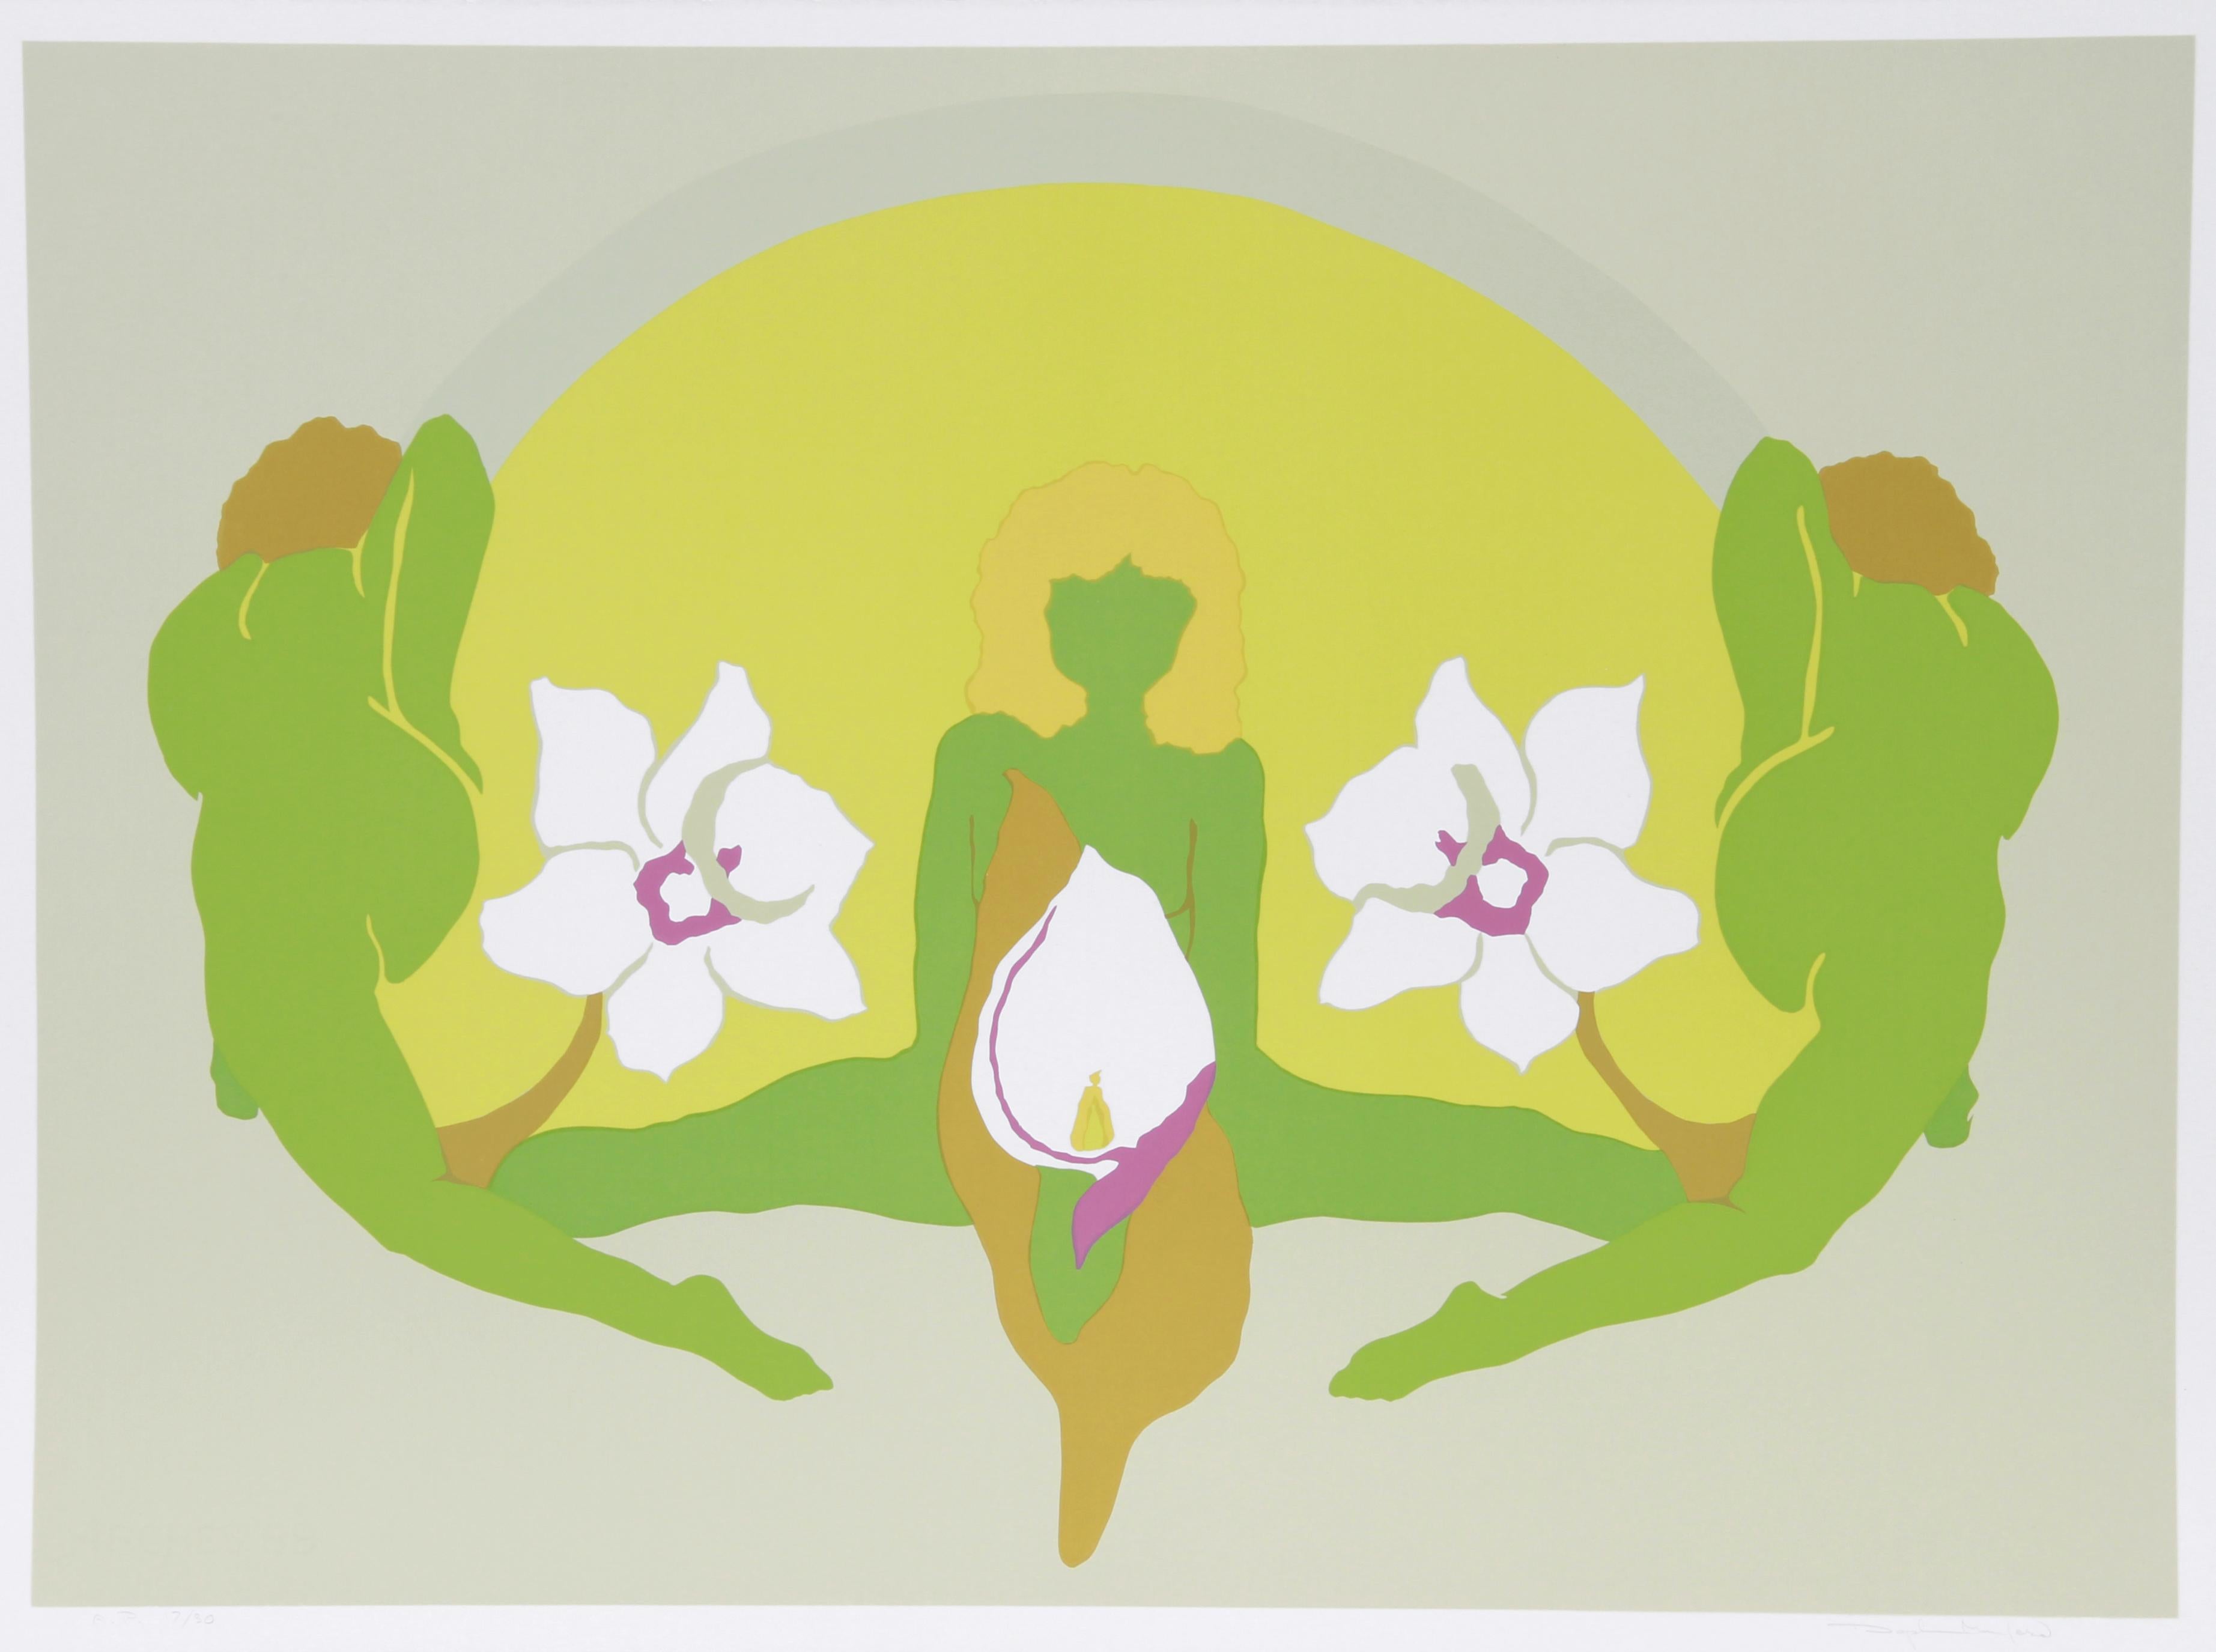 Künstler:  Daphne Mumford, Amerikanerin (1934 - )
Titel:  Frühling I
Jahr:  1978
Medium:  Serigraphie, signiert und nummeriert mit Bleistift
Auflage:  200, AP 30
Bildgröße:  21 x 29 Zoll
Größe:  22,5 Zoll x 30 Zoll (57,15 cm x 76,2 cm)